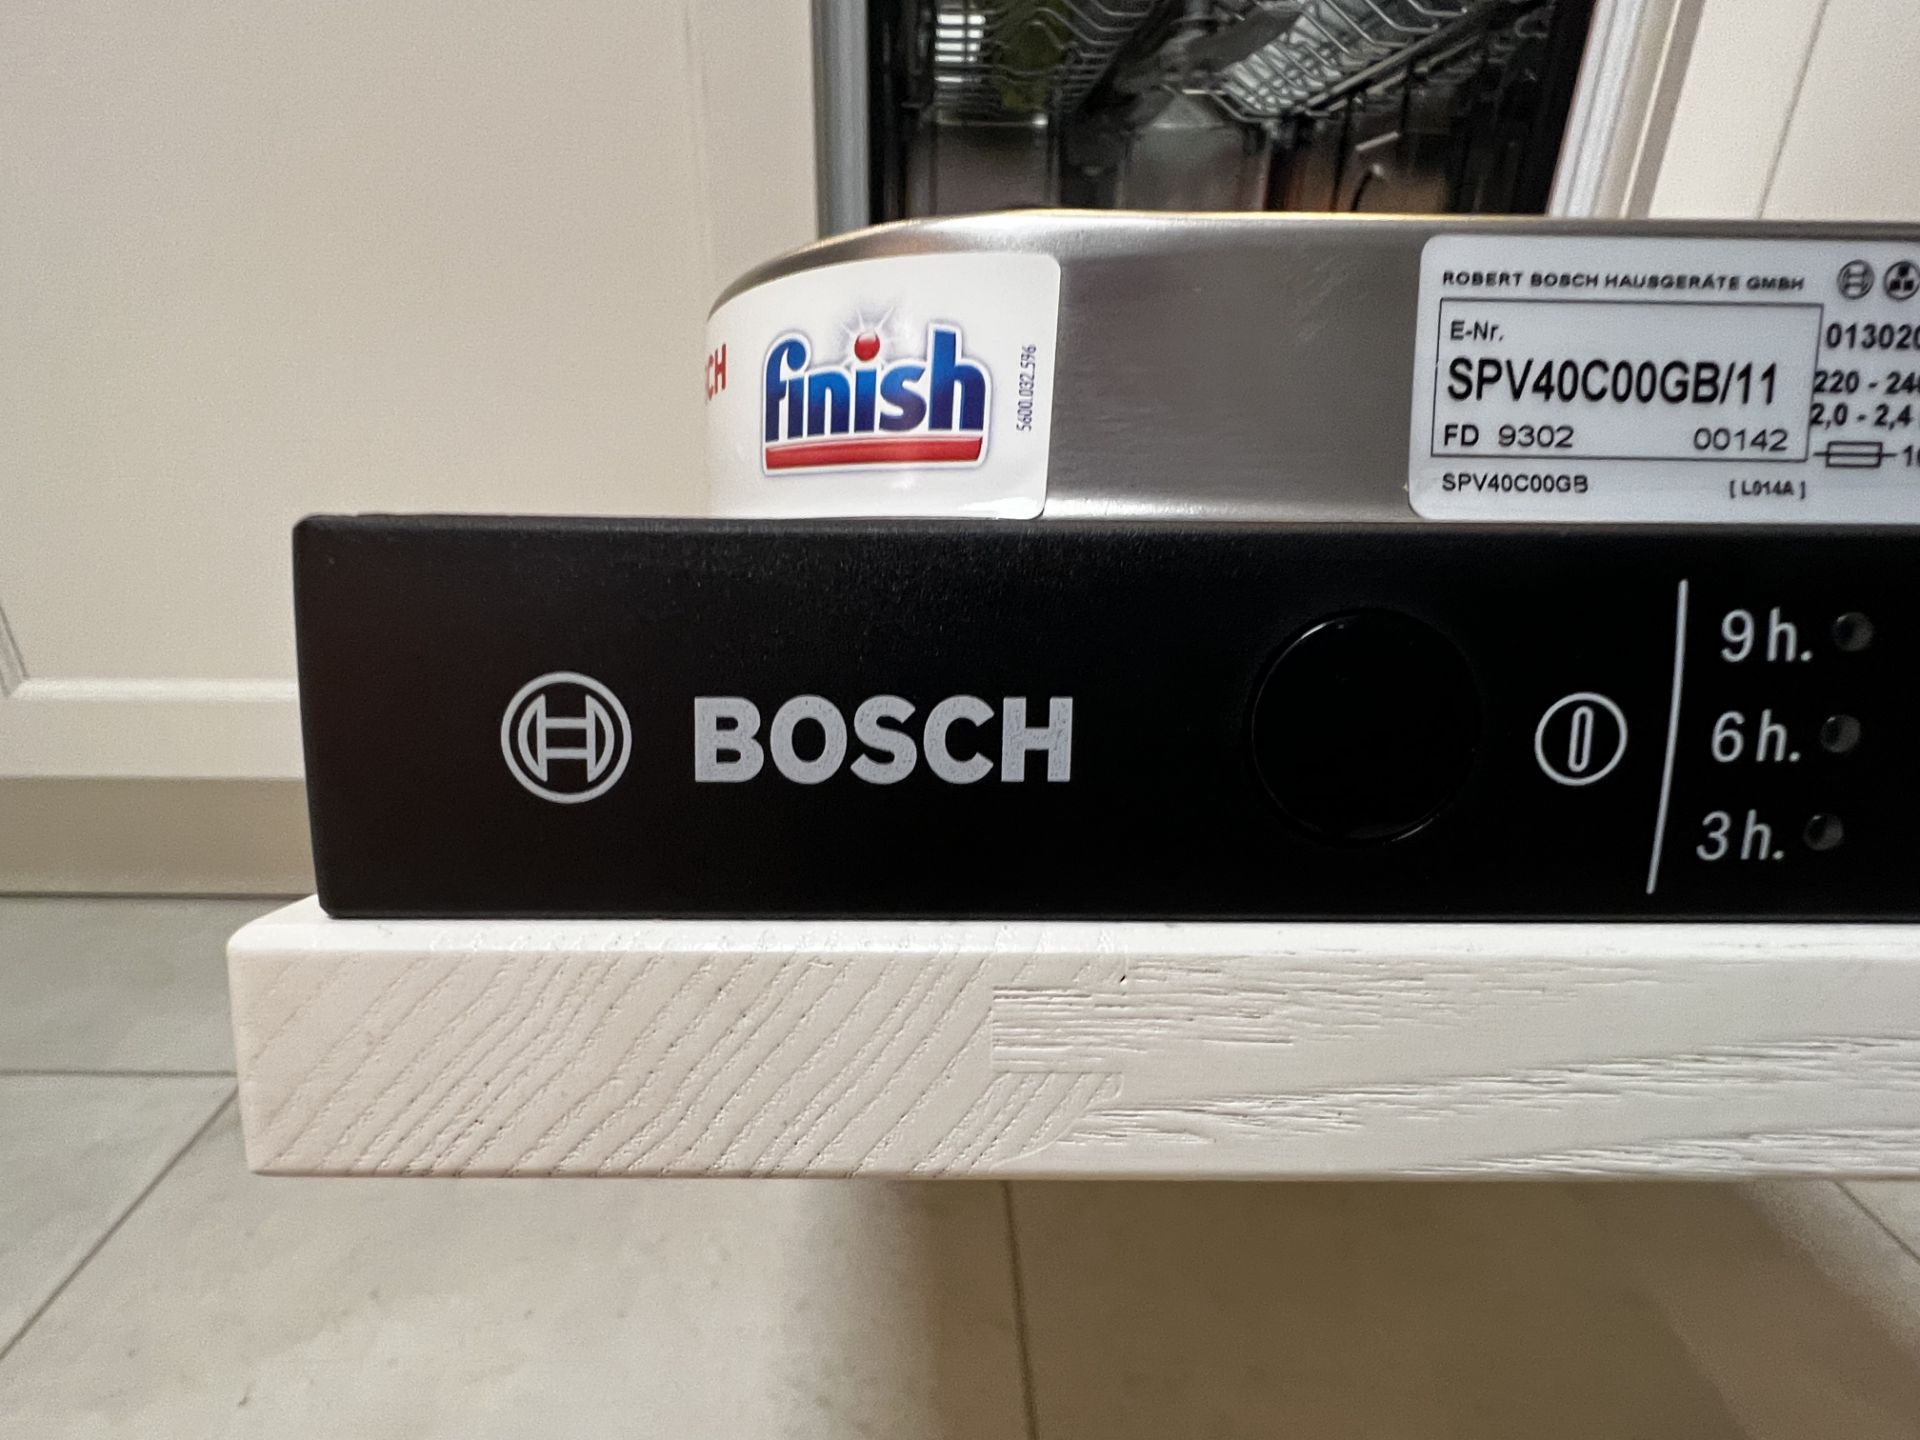 Bosch built in dishwasher, model 5D4PZB - Bild 2 aus 5